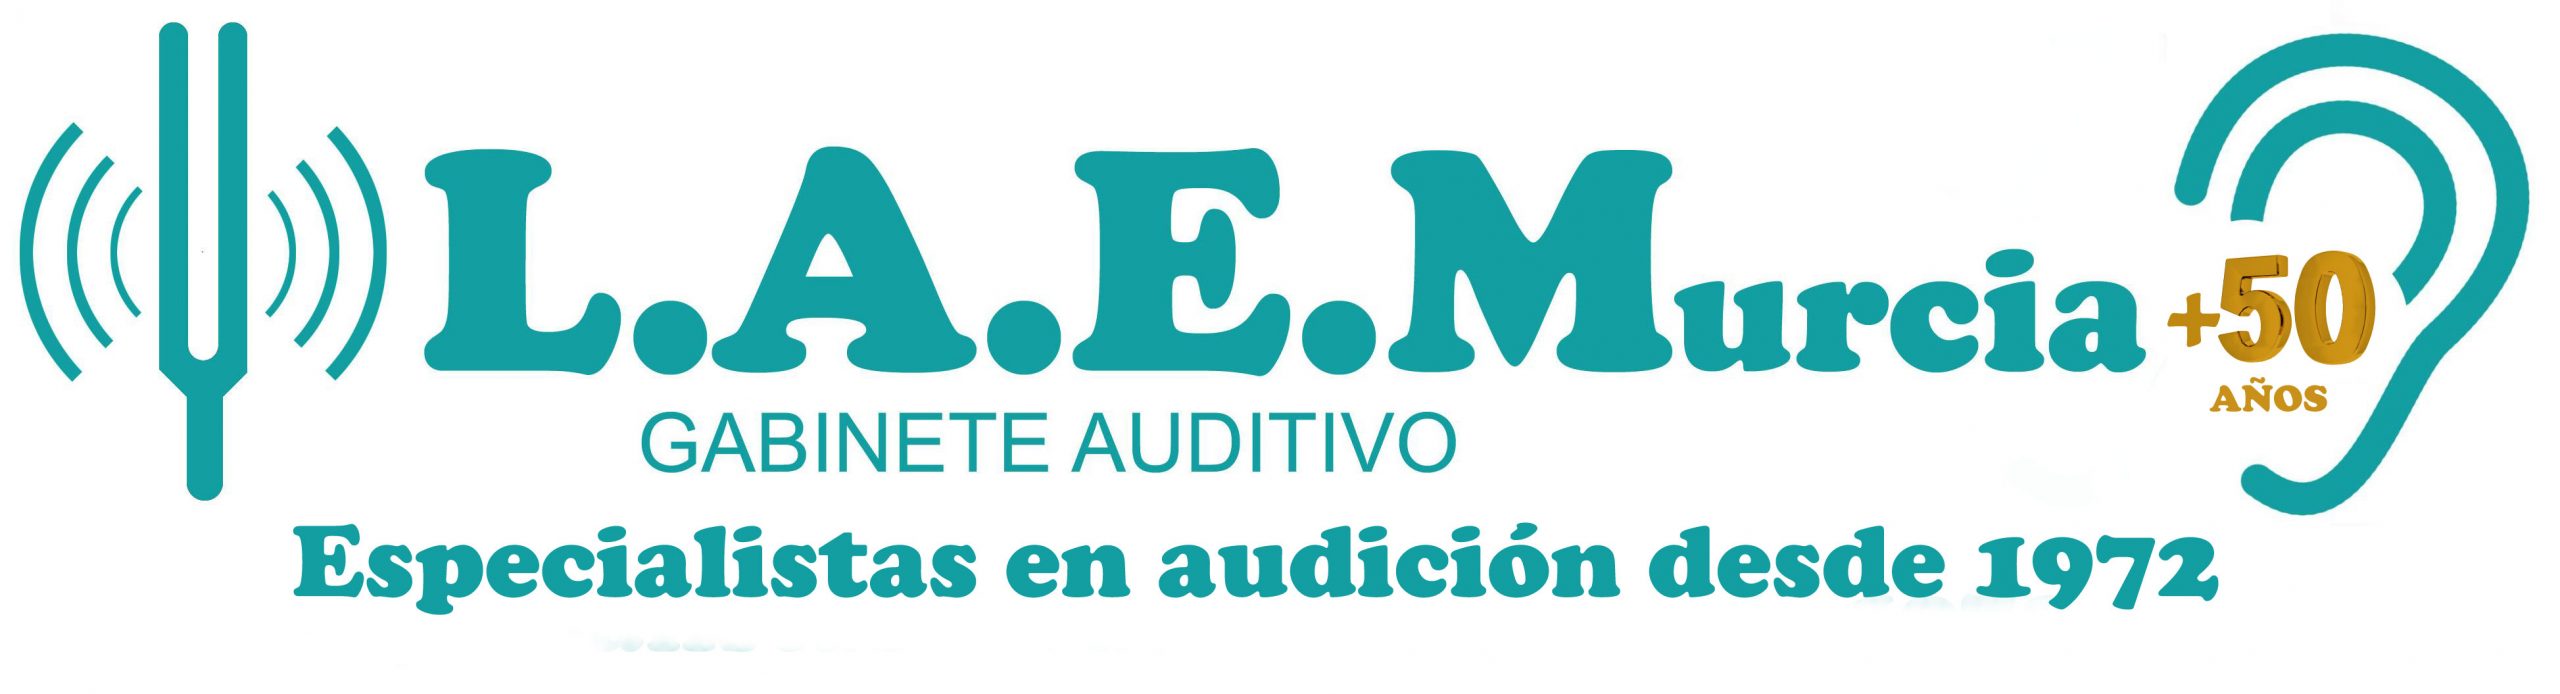 Centro Auditivo L.A.E.Murcia – Audífonos Murcia. Especialistas en audición desde 1972.